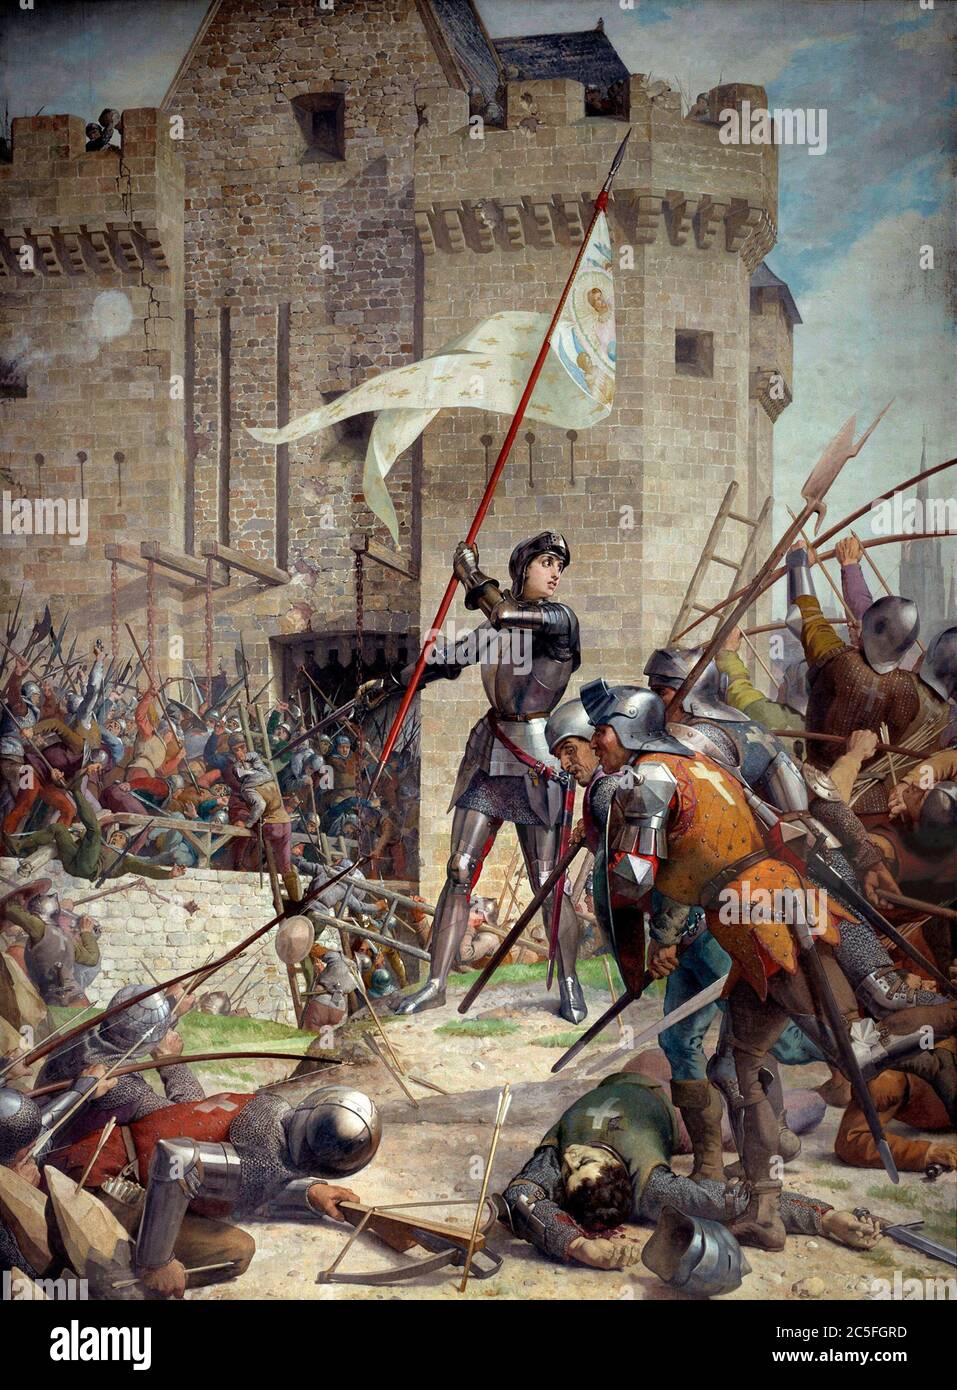 Peinture de Jeanne d'Arc au siège d'Orléans Eugène Lenepveu - le siège d'Orléans (12 octobre 1428 – 8 mai 1429) fut le tournant de la guerre de cent ans entre la France et l'Angleterre. C'était la première victoire militaire majeure de l'armée royale française à suivre la défaite écrasante à la bataille d'Agincourt en 1415, et la première fois que Jeanne d'Arc était avec l'armée.[b] Banque D'Images